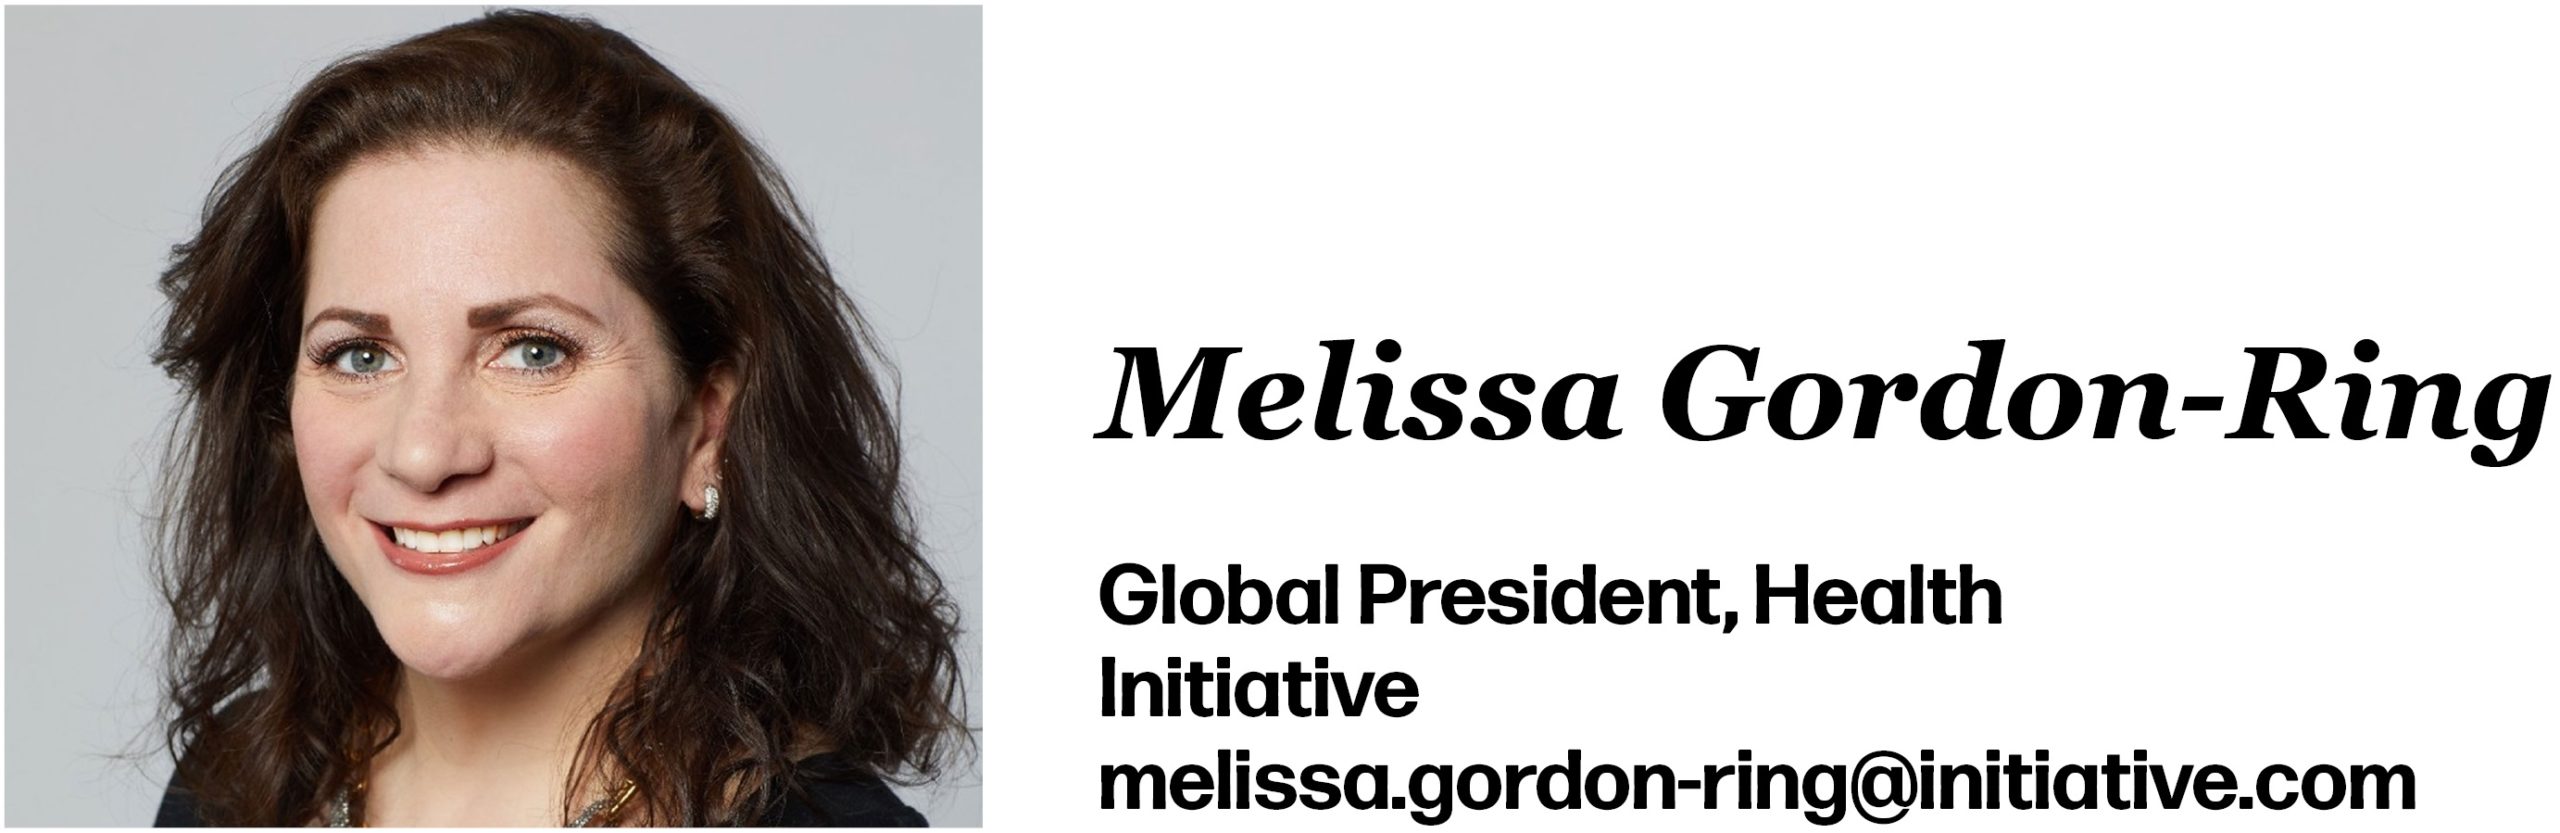 Melissa Gordon-Ring is Global President, Health at Initiative. Her email is melissa.gordon-ring@initiative.com. 